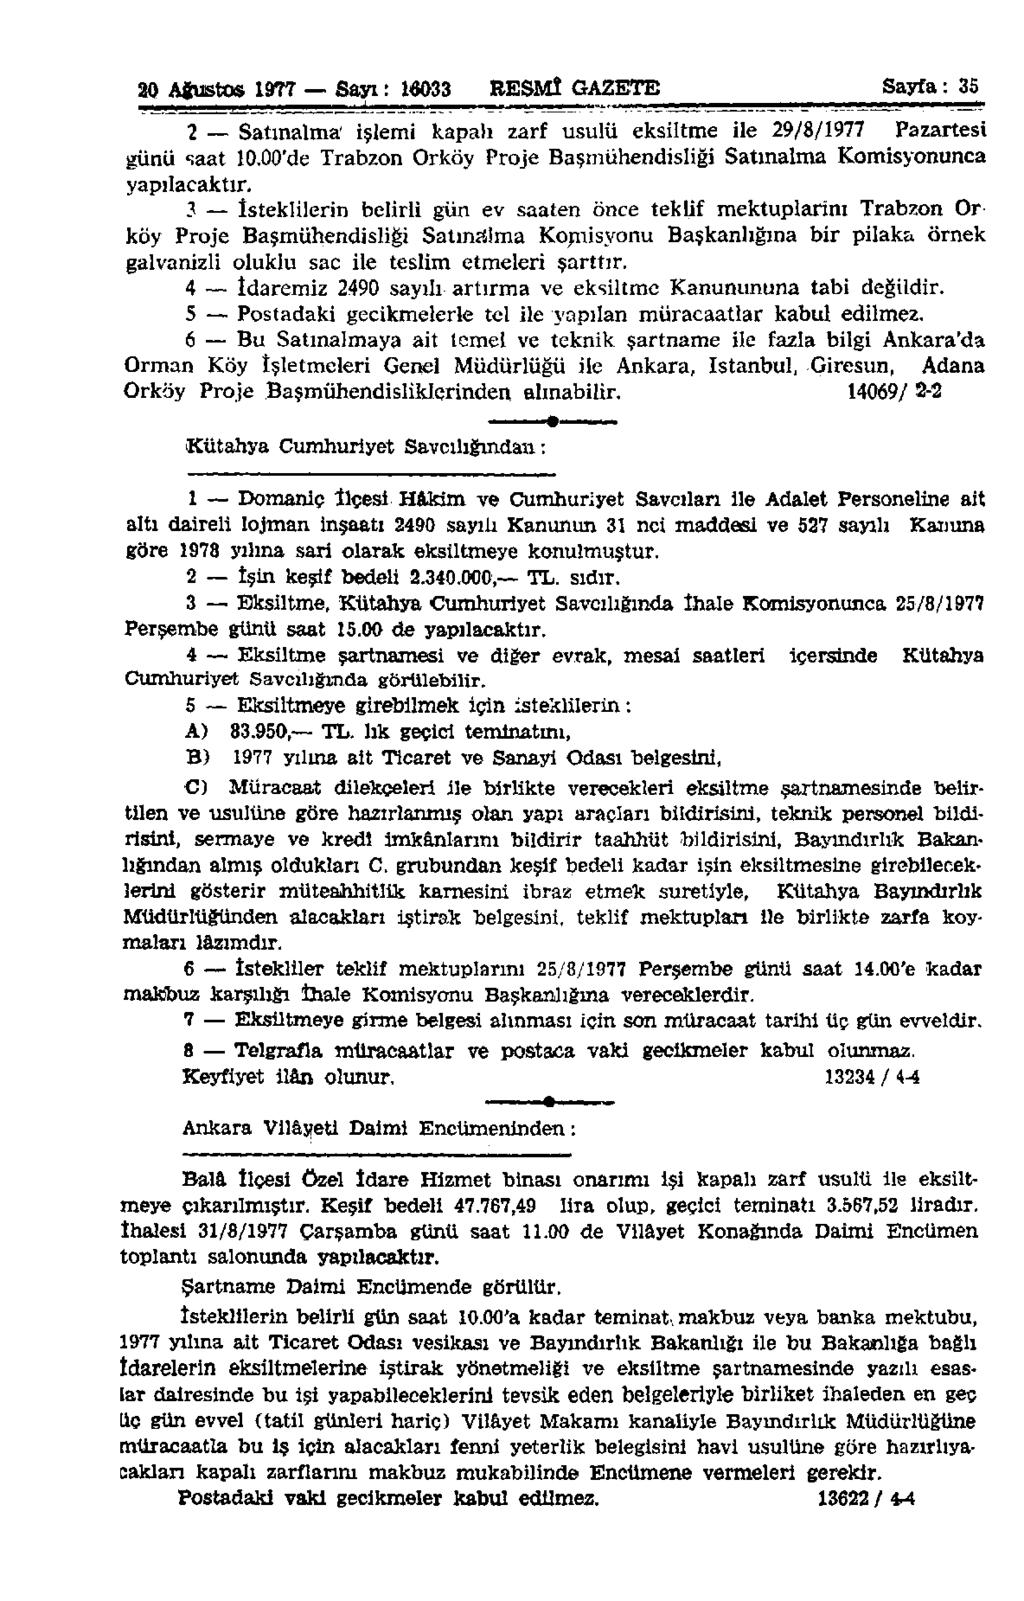 20 Ağustos 1977 Sayı: 10033 RESMÎ GAZETE Sayfa: 35 2 Satınalma işlemi kapalı zarf usulü eksiltme ile 29/8/1977 Pazartesi günü saat 10.